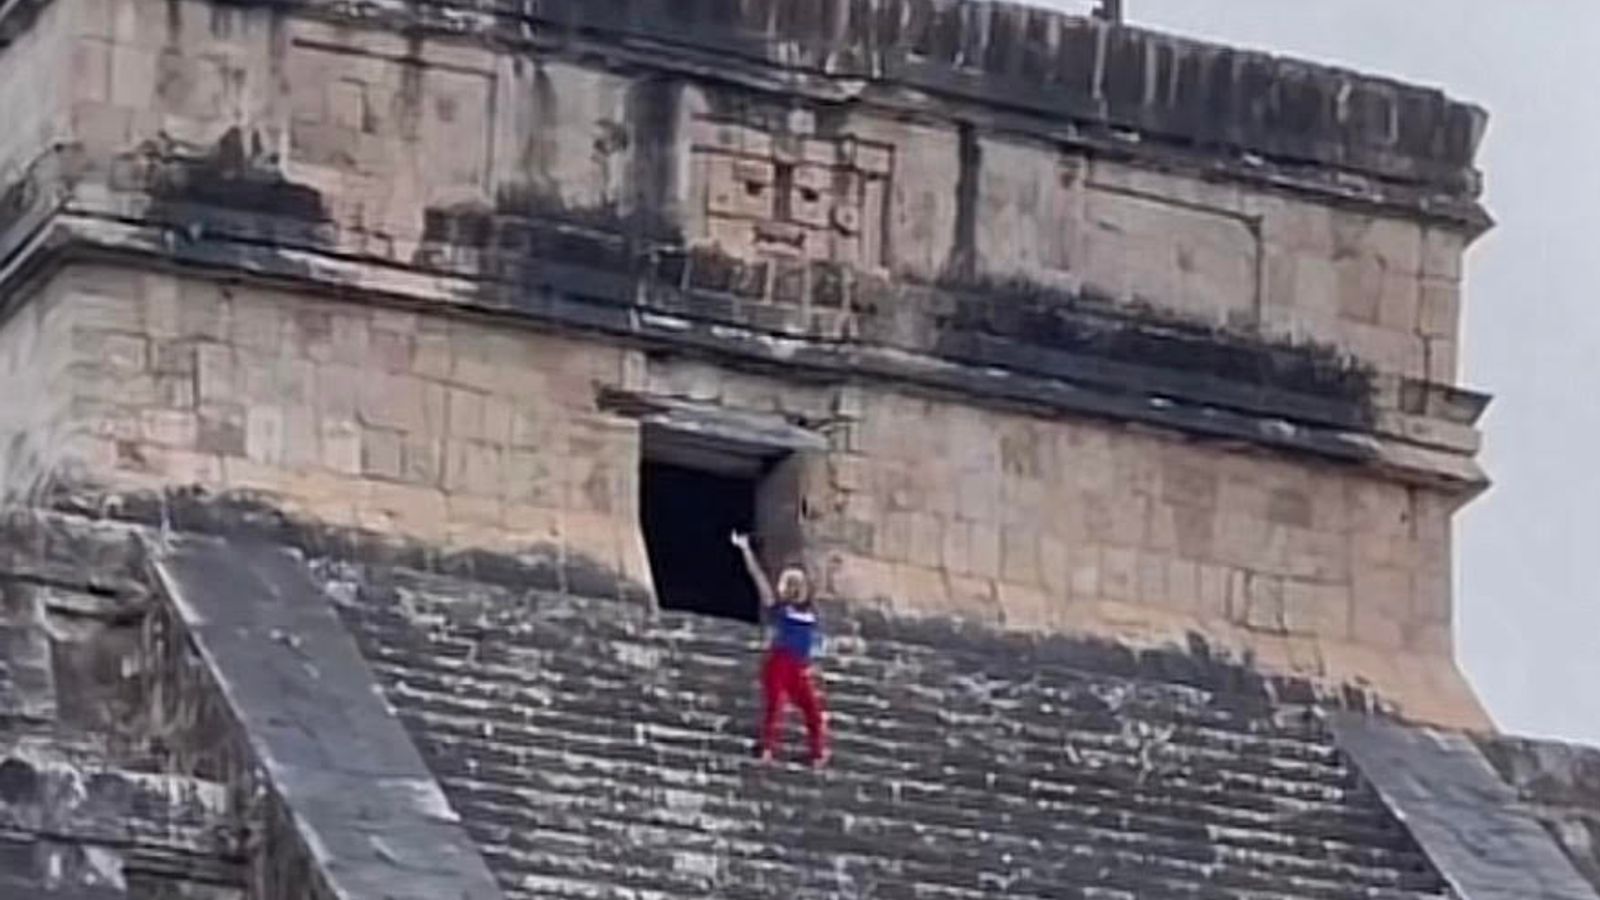 Touristen schreien und pöbeln, nachdem sie die alte Pyramide in Mexiko erklommen haben |  Weltnachrichten